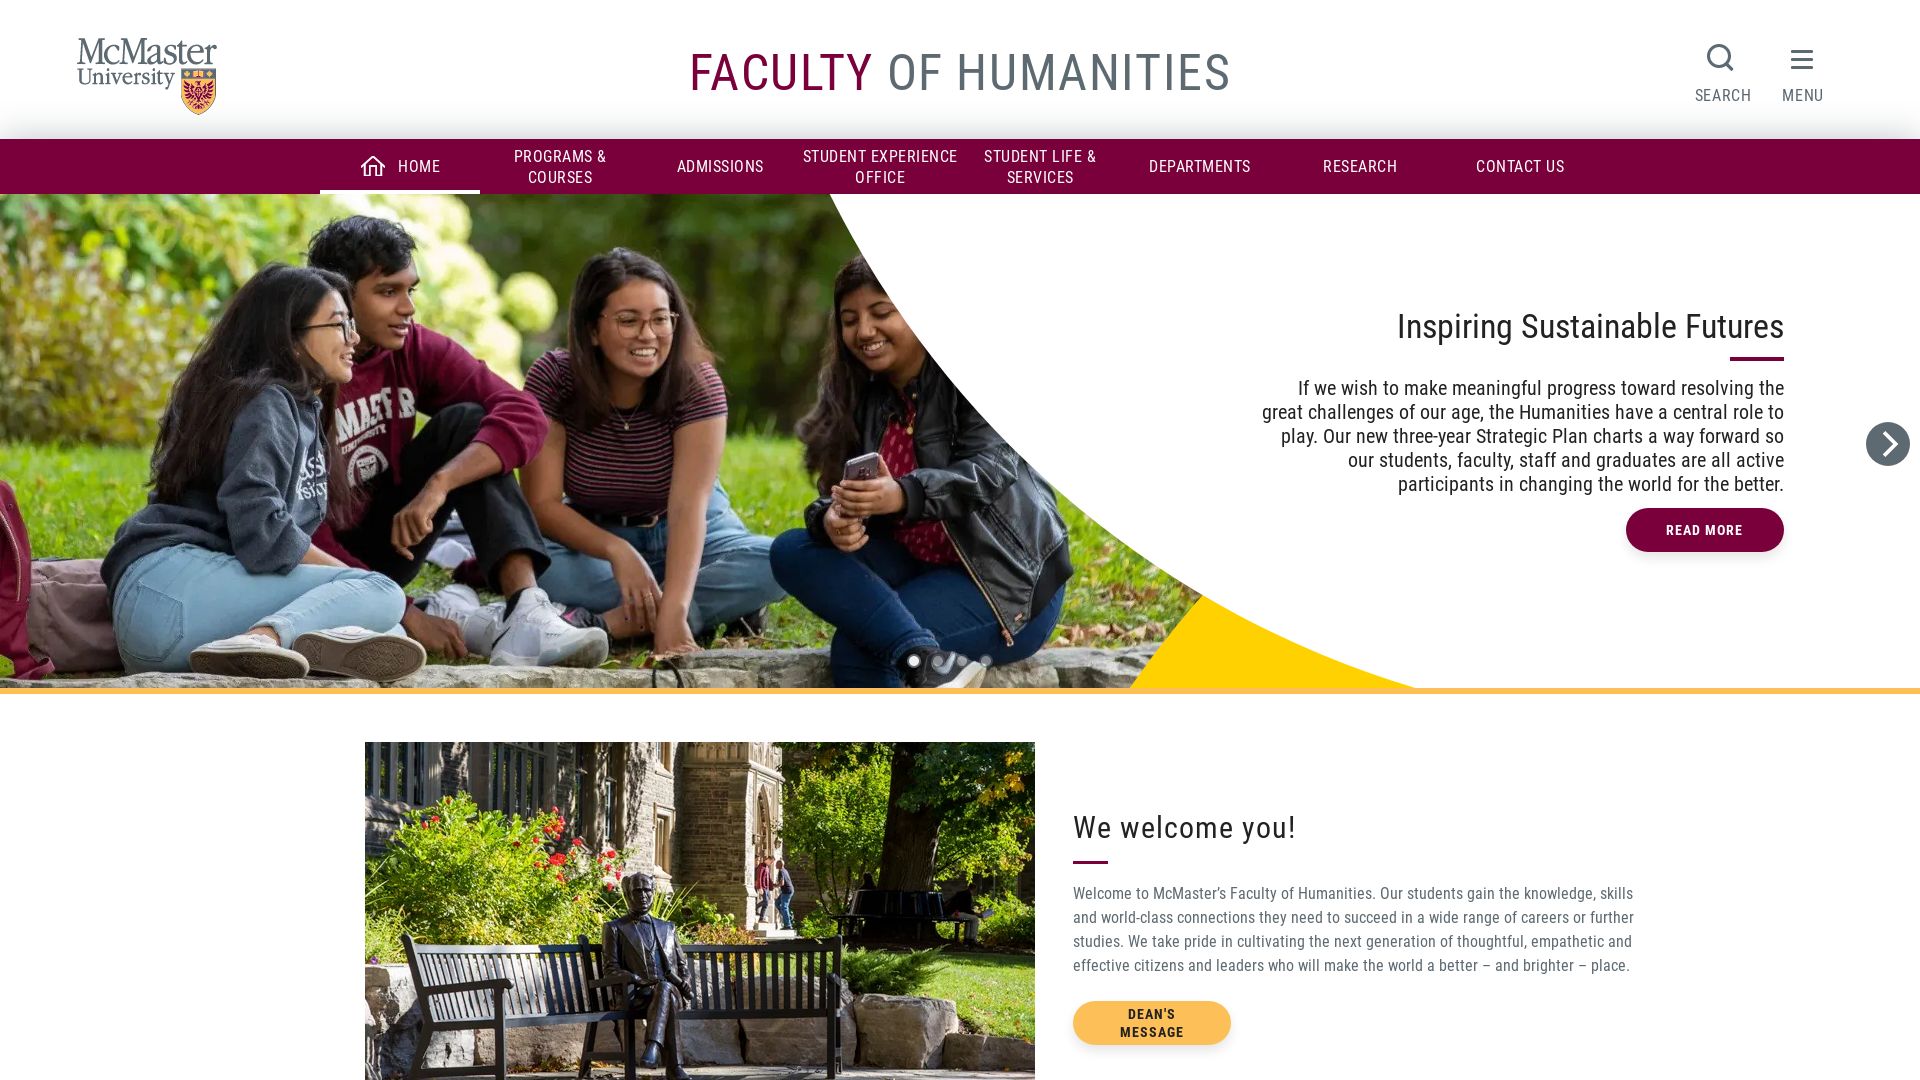 Website status www.humanities.mcmaster.ca is   ONLINE